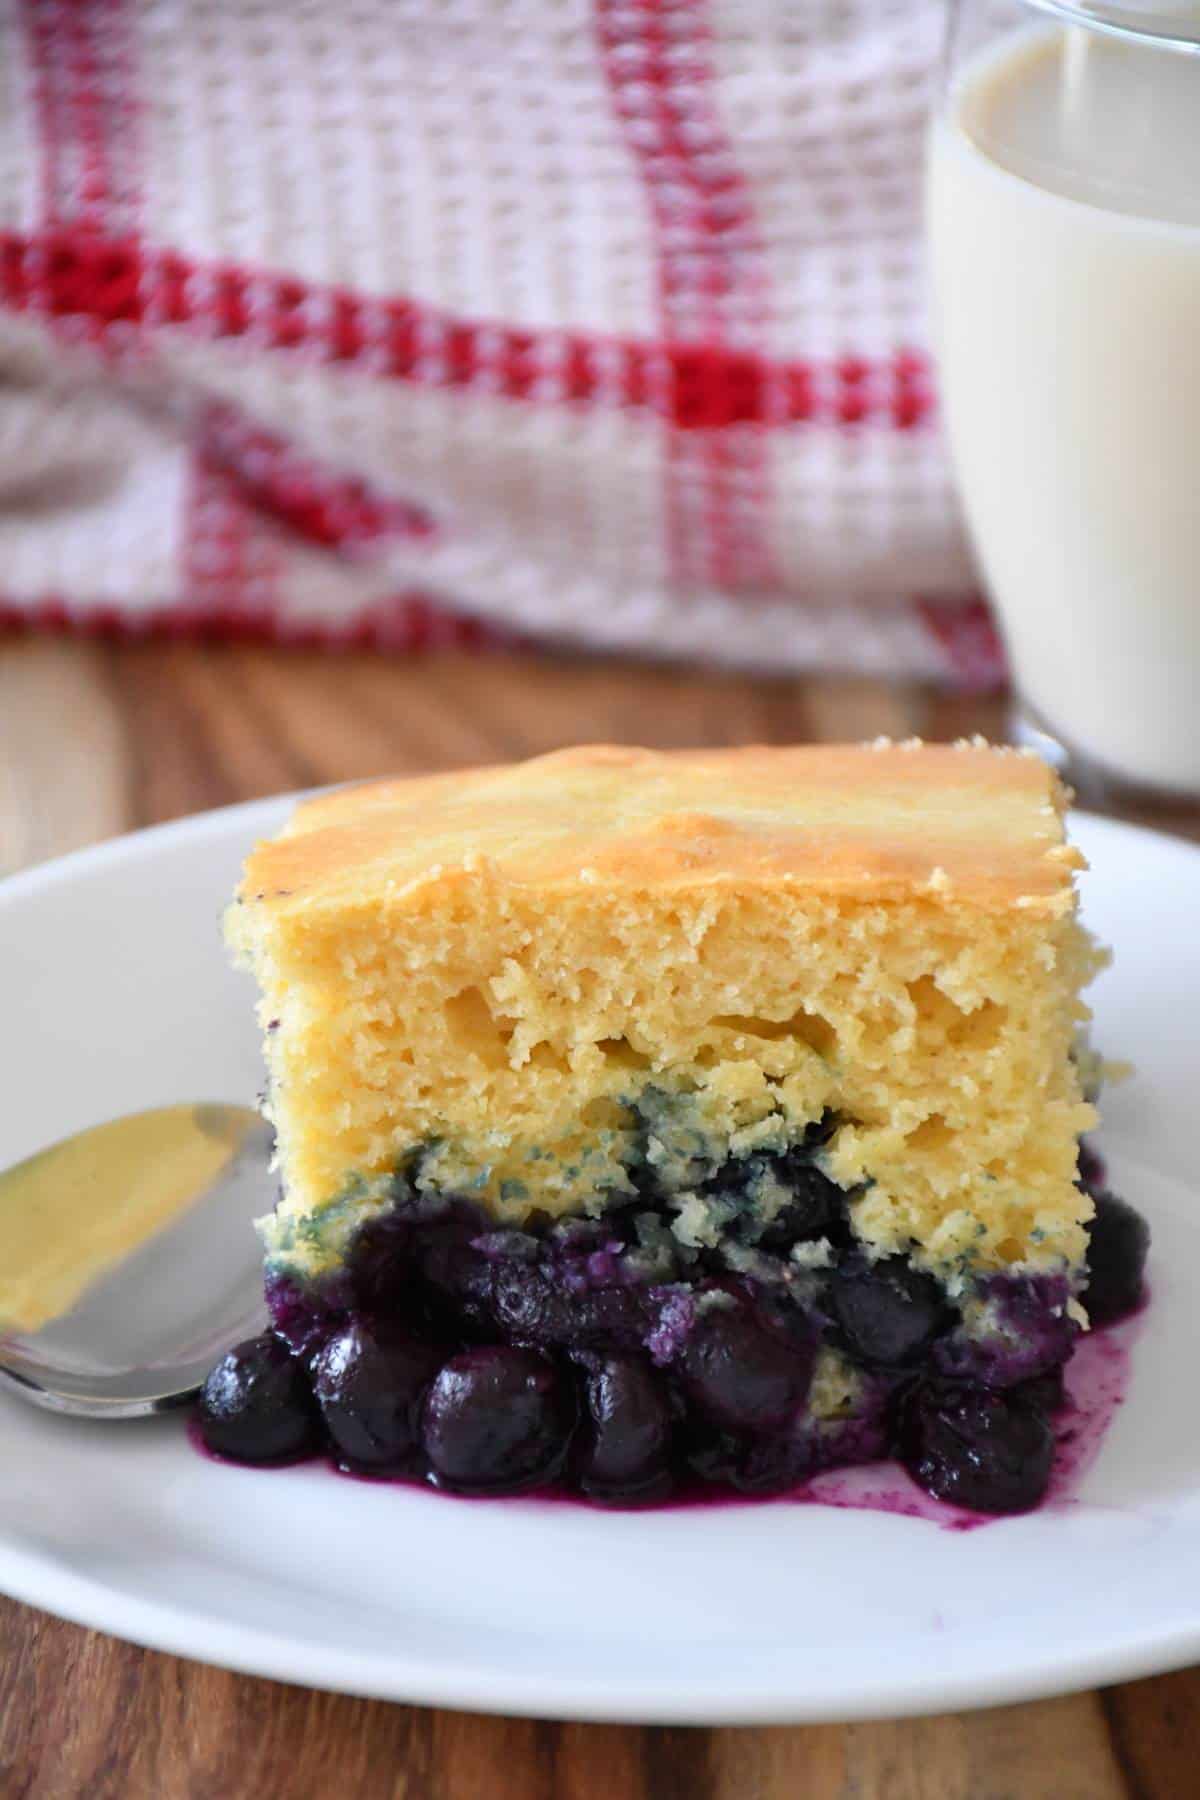 Freshly bake maple and blueberry pudding cake.